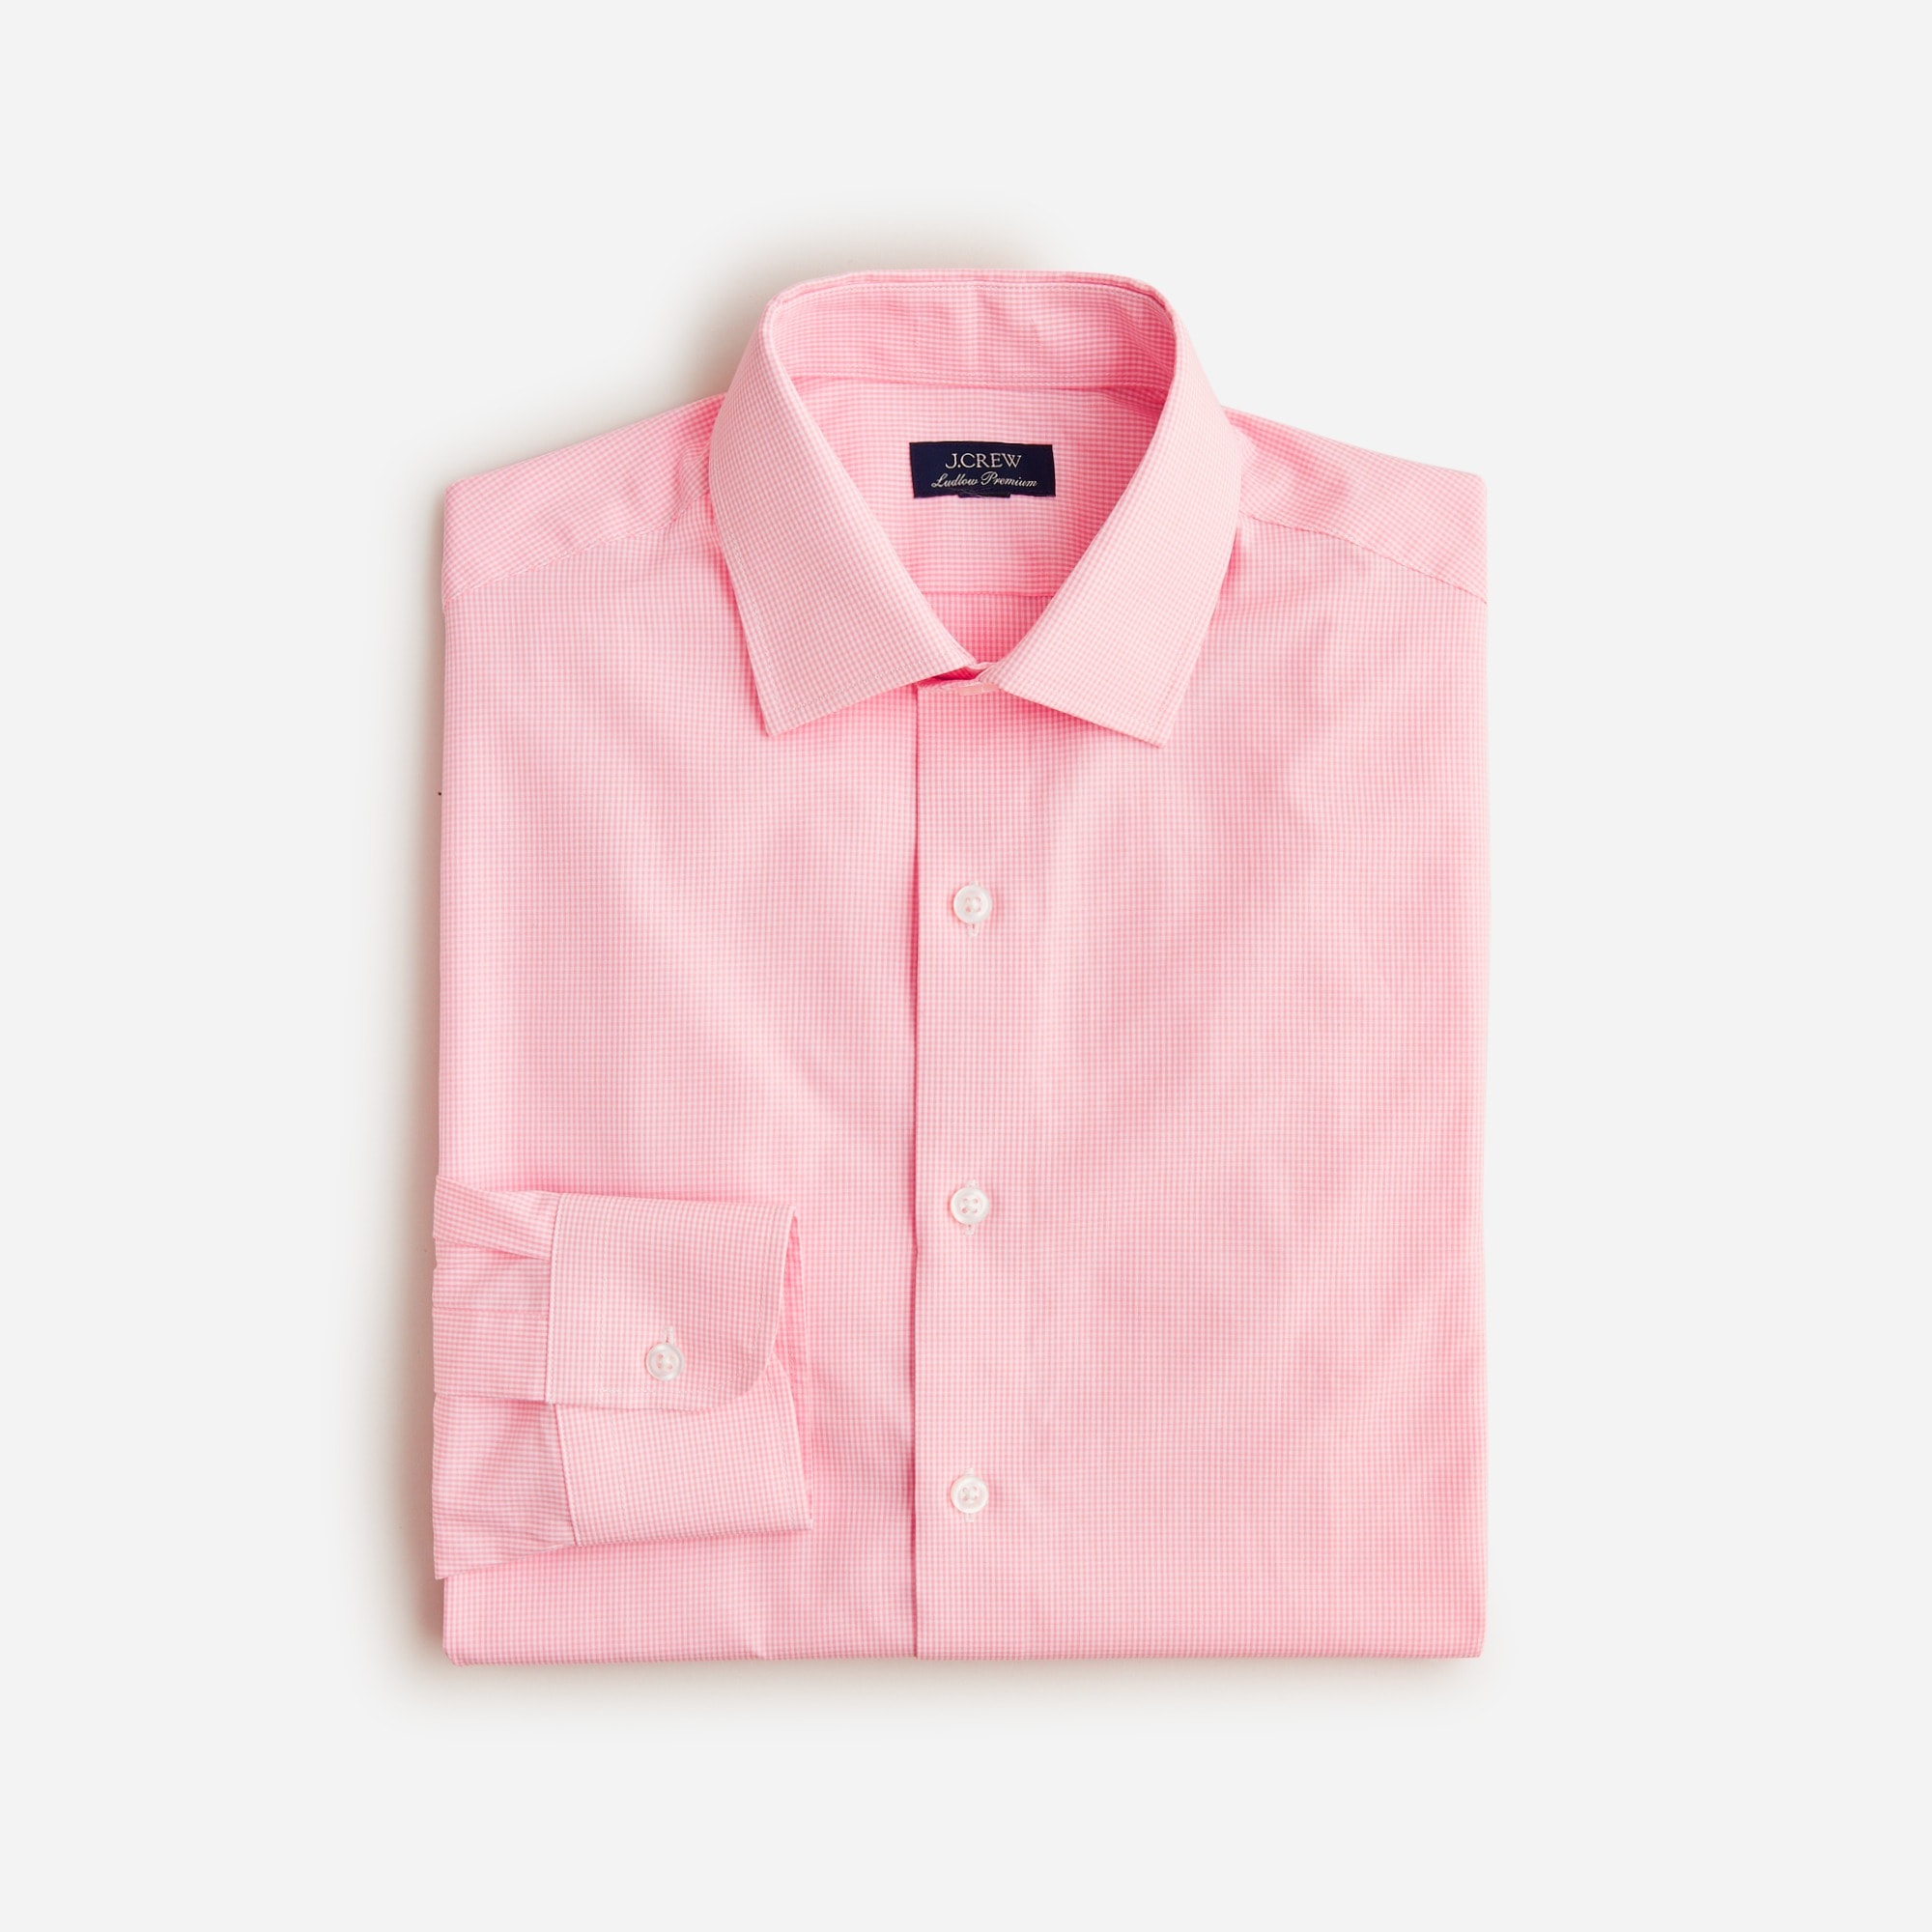 mens Ludlow Premium fine cotton dress shirt